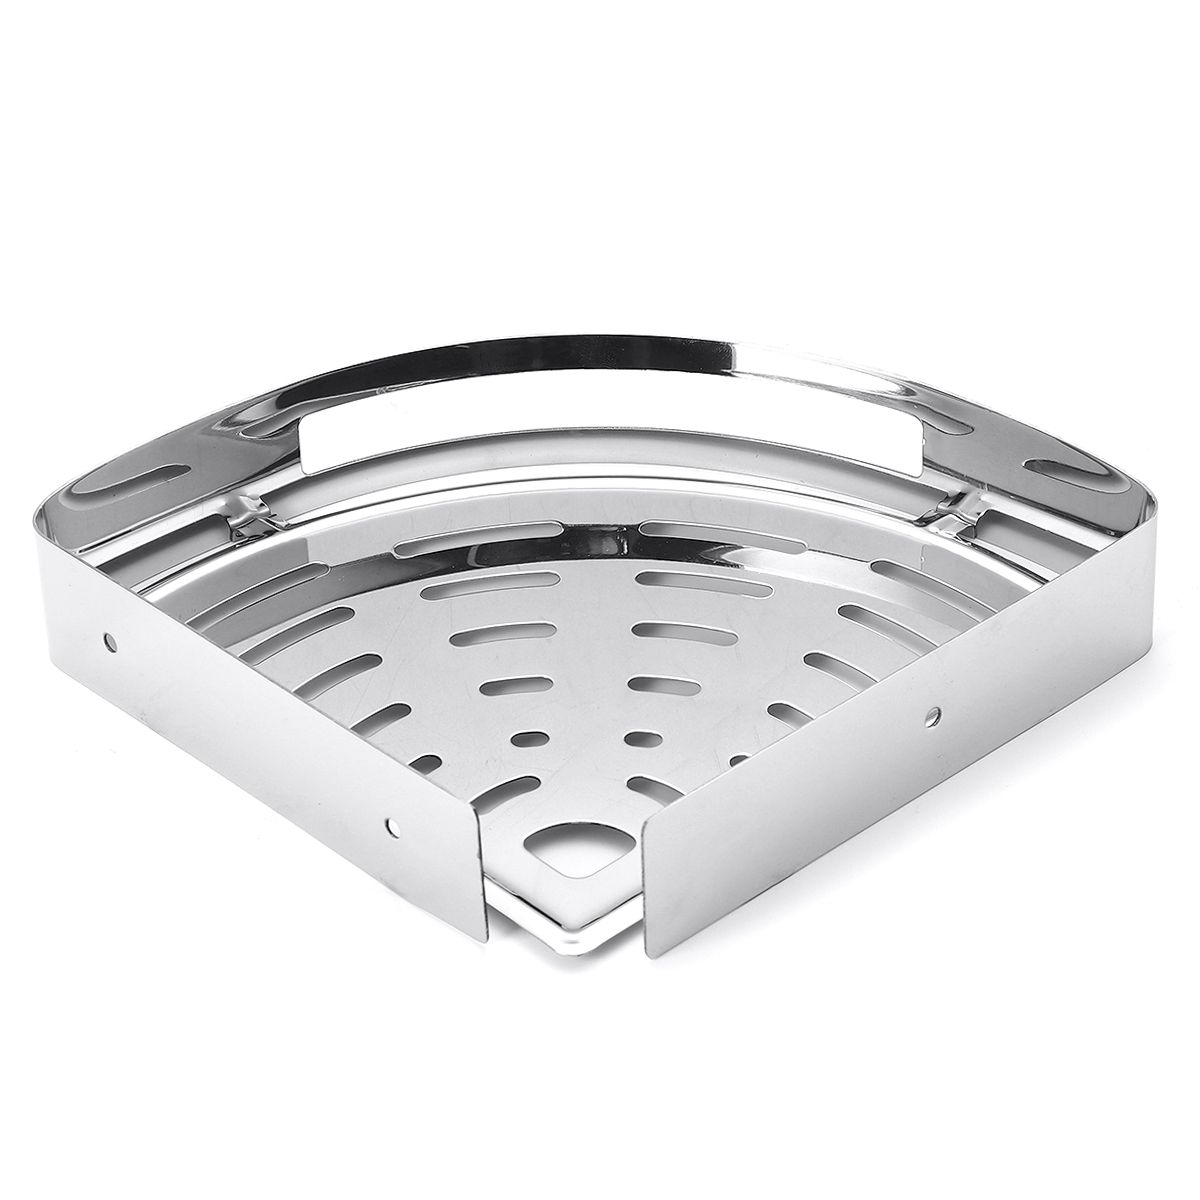 KitchenBathroom-Stainless-Steel-Triangular-Rack-Shower-Caddy-Storage-Holder-Shelf-1602525